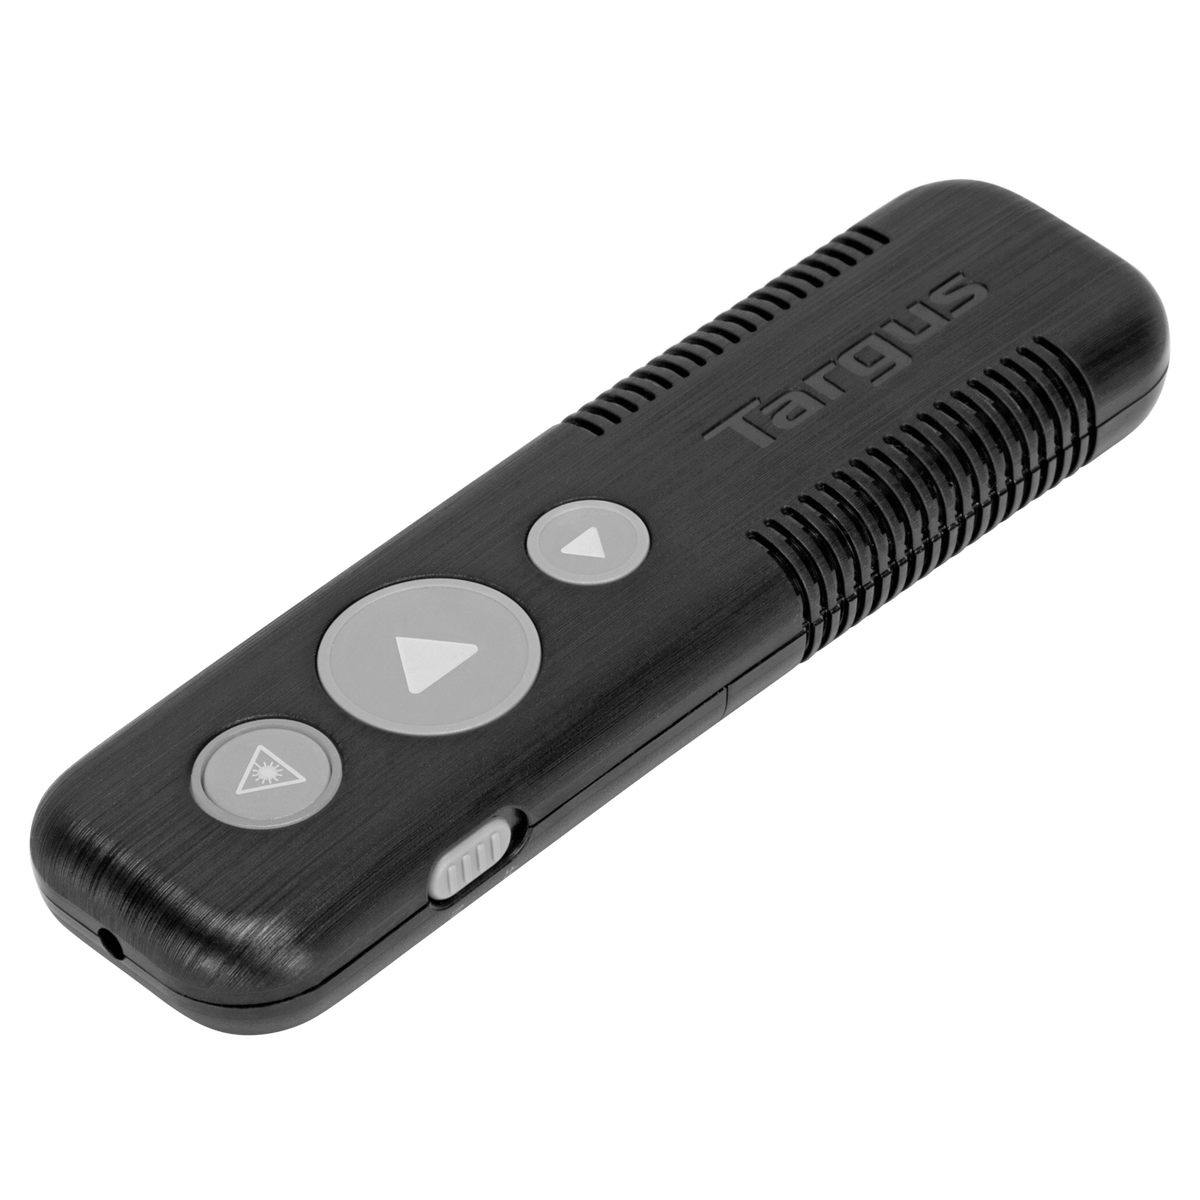 Wireless USB Presenter with Laser Pointer